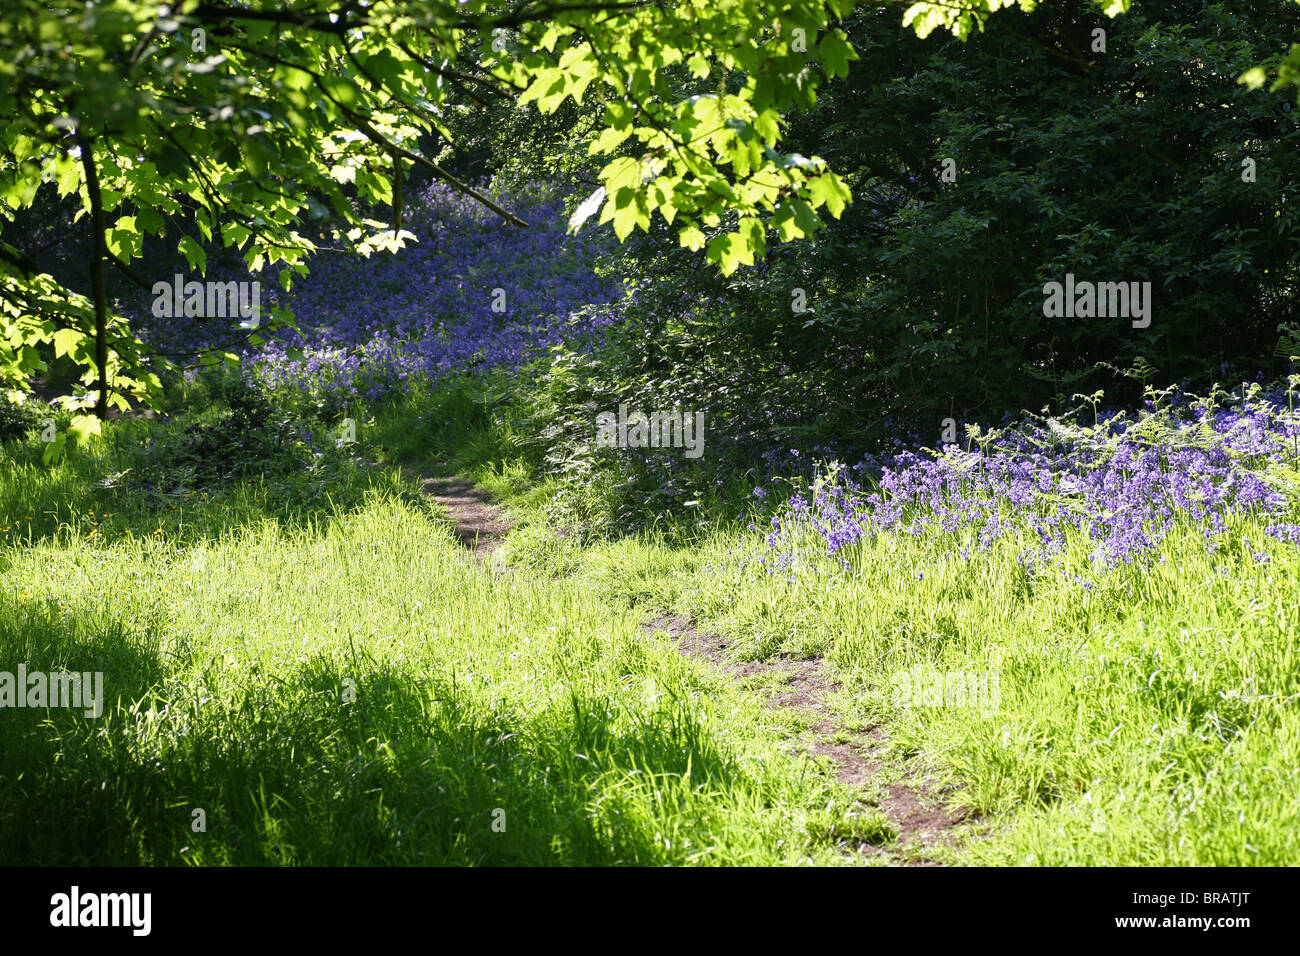 Bluebell Bluebells jacinthoides non-scripta par un sentier dans un bois anglais, Stoke on Trent, Staffordshire, Angleterre, Royaume-Uni Banque D'Images